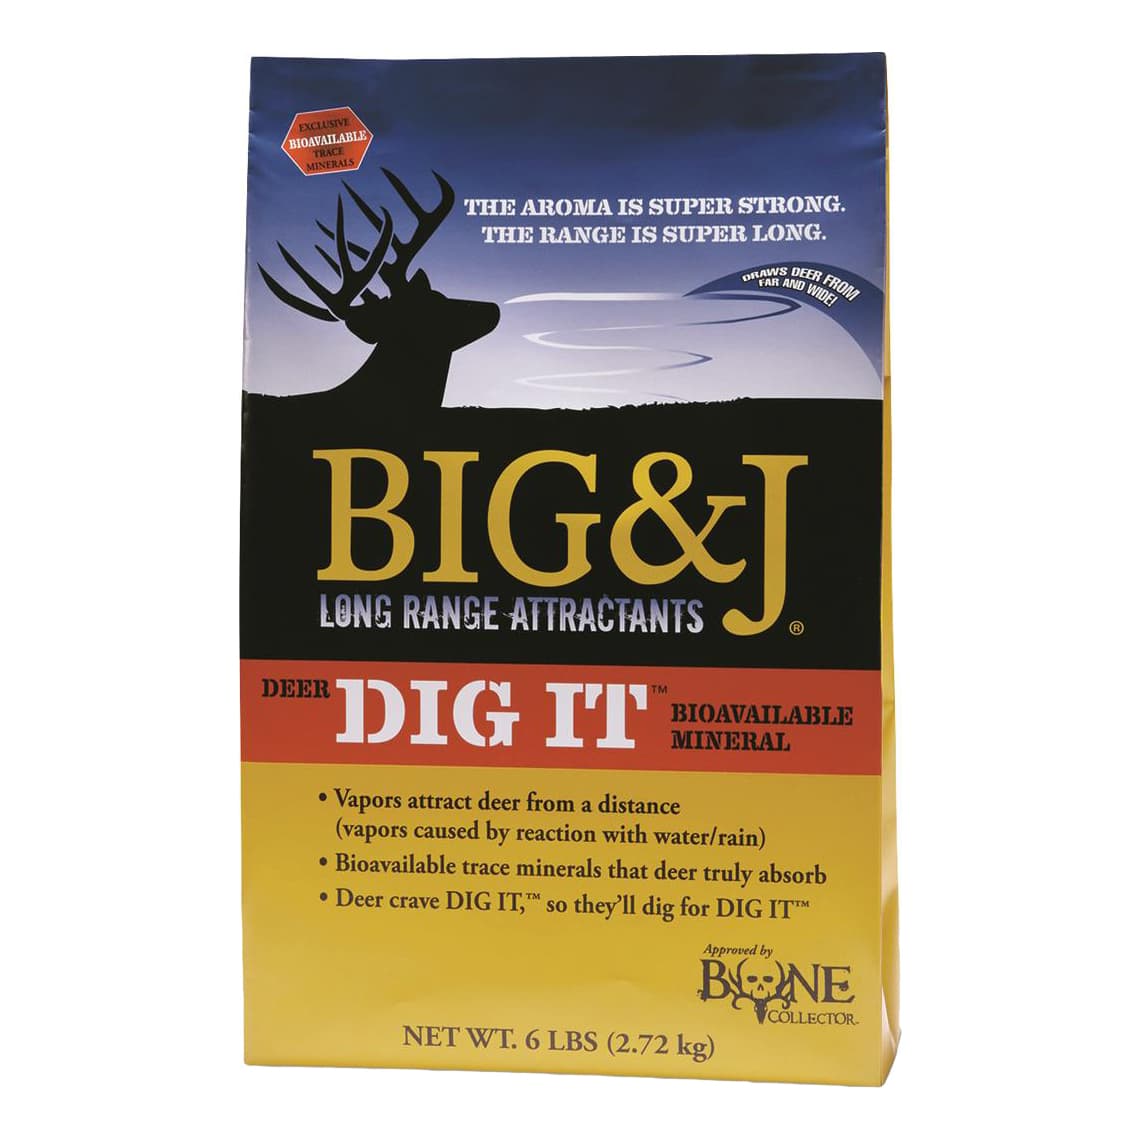 Big&J Deer Dig It Attractant